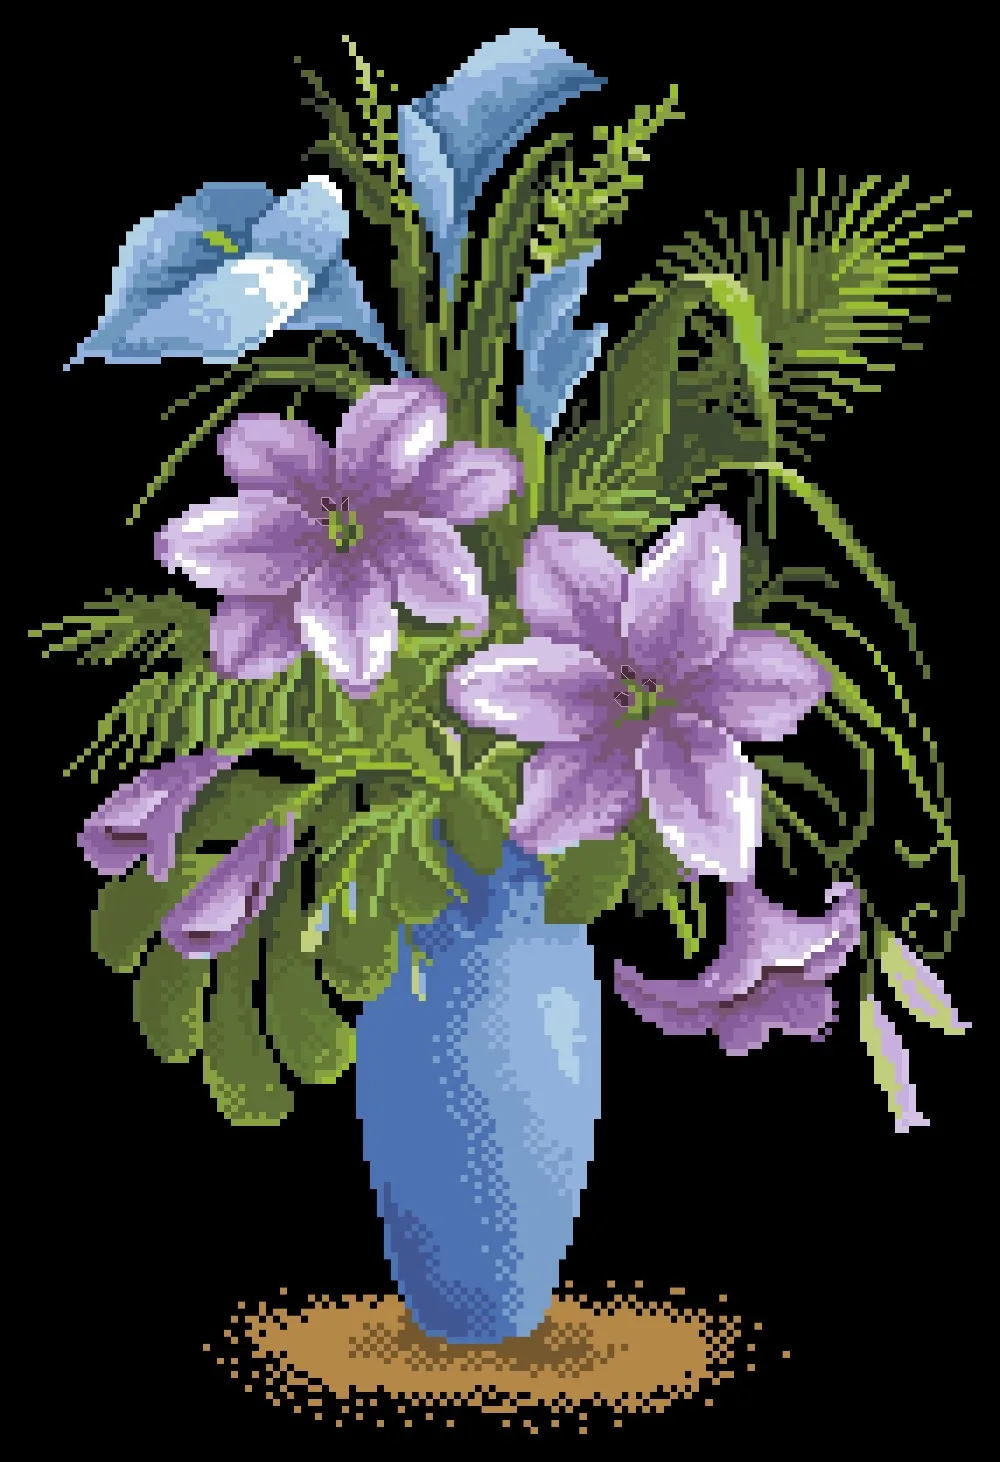 Lily pasakų kryželiu paketo gėlių vaza rinkiniai aida 18ct 14ct 11ct juoda medžiaga žmonės rinkinys siuvinėjimui 